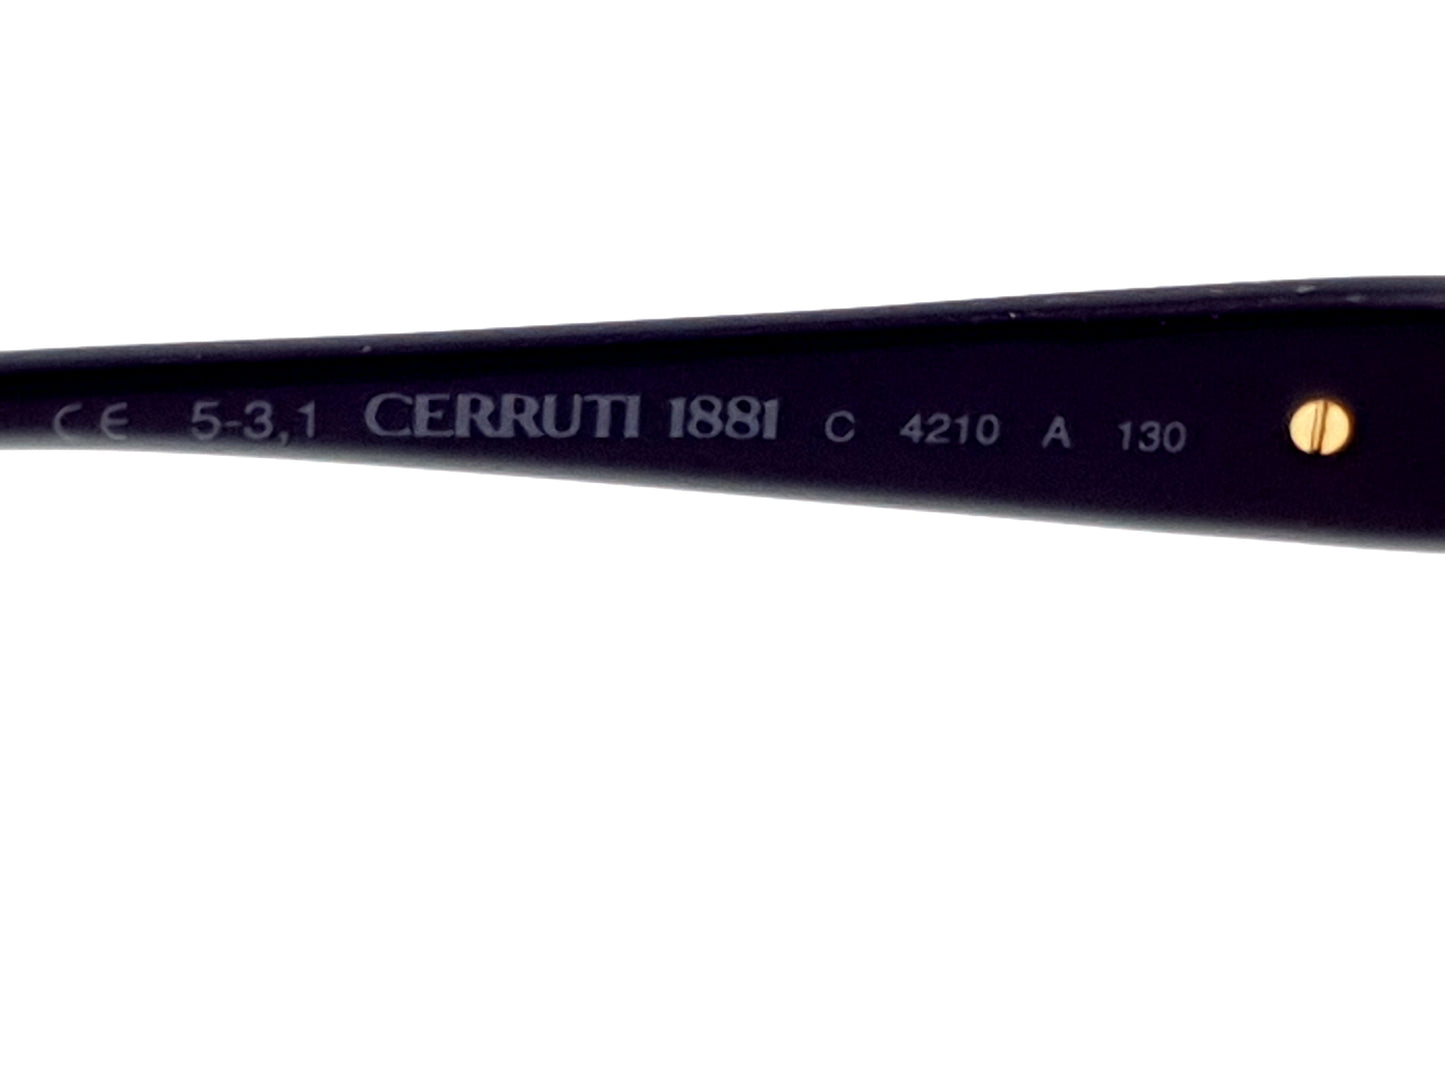 CERRUTI 1881 C 4210